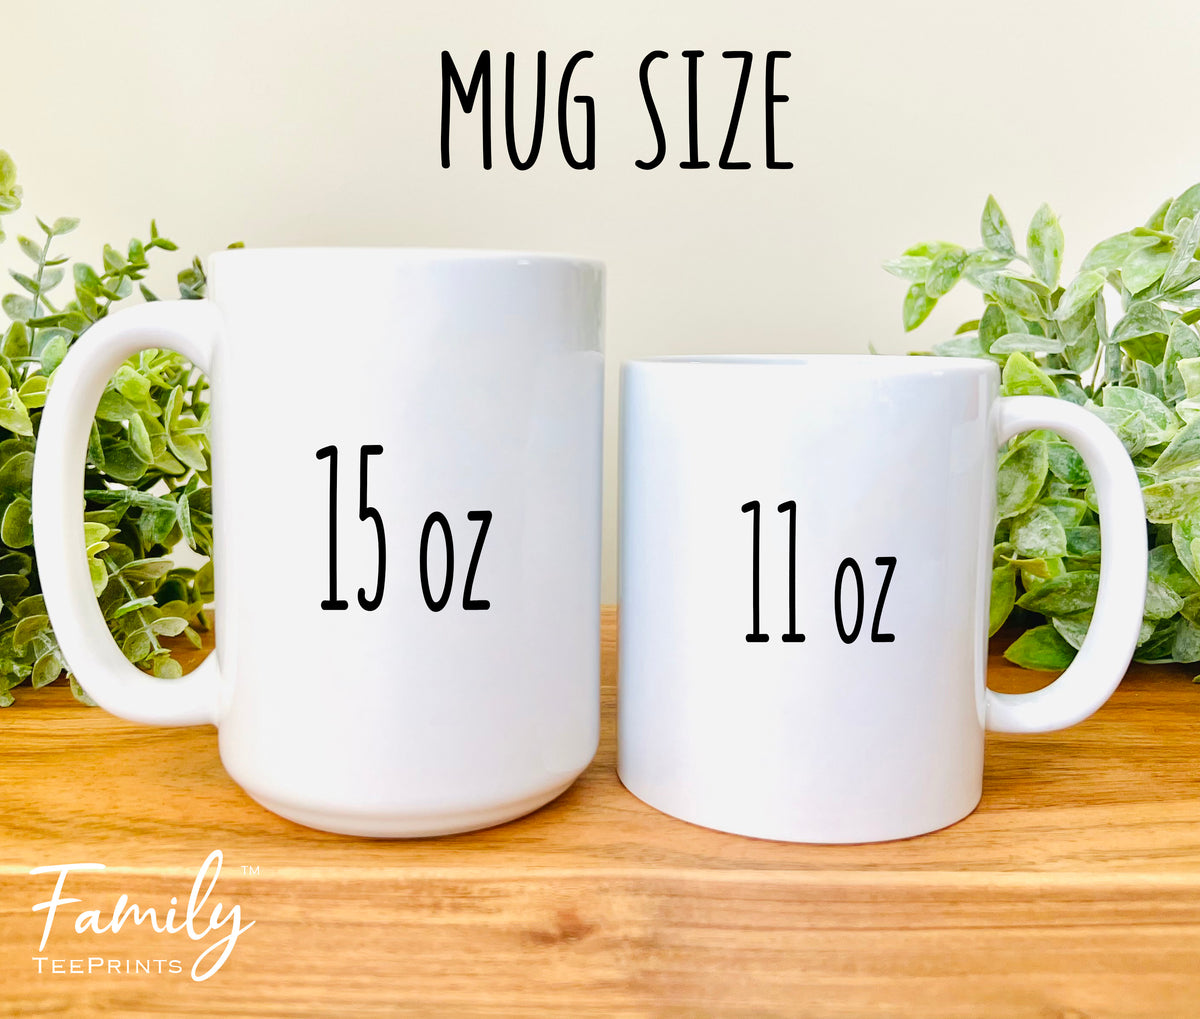 Yoda Best Husband - Coffee Mug - Gifts For Husband - Husband Coffee Mug